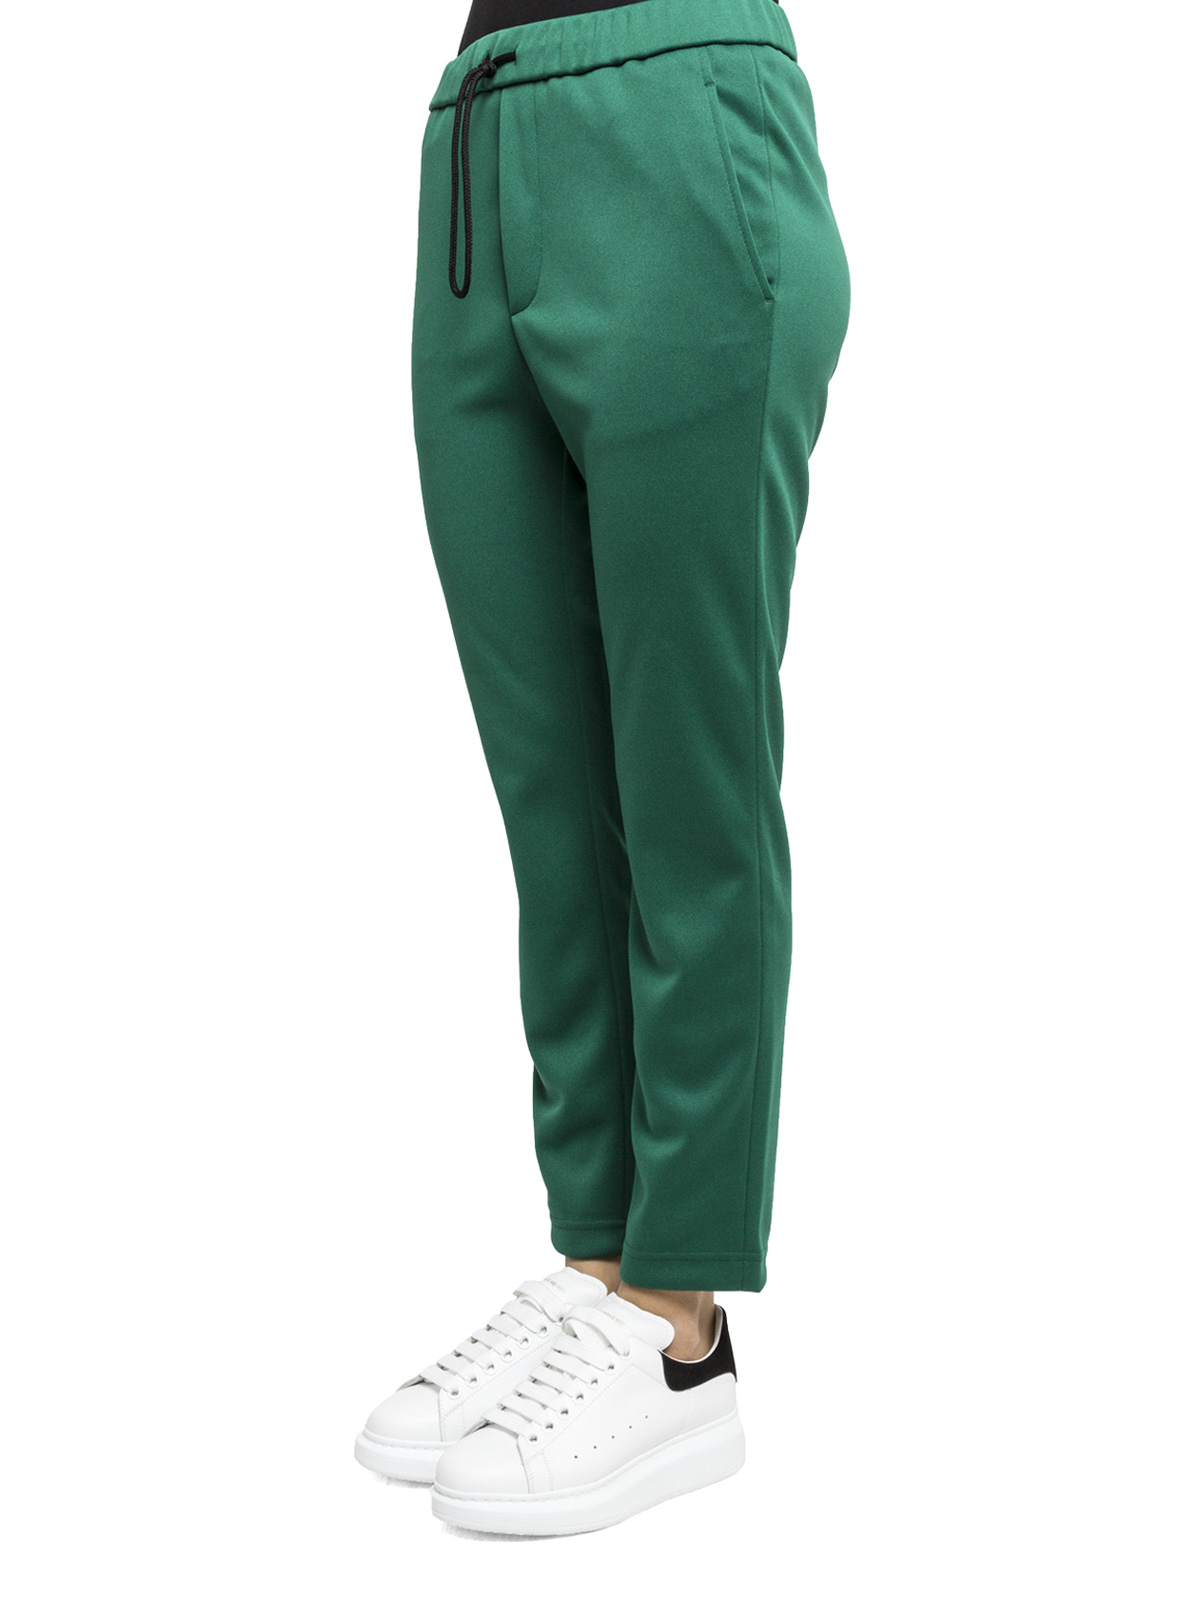 Velo circuito contenido Pantalones deportivos Golden Goose - Pantalón Chándal Verde Para Mujer -  G30WP018A1